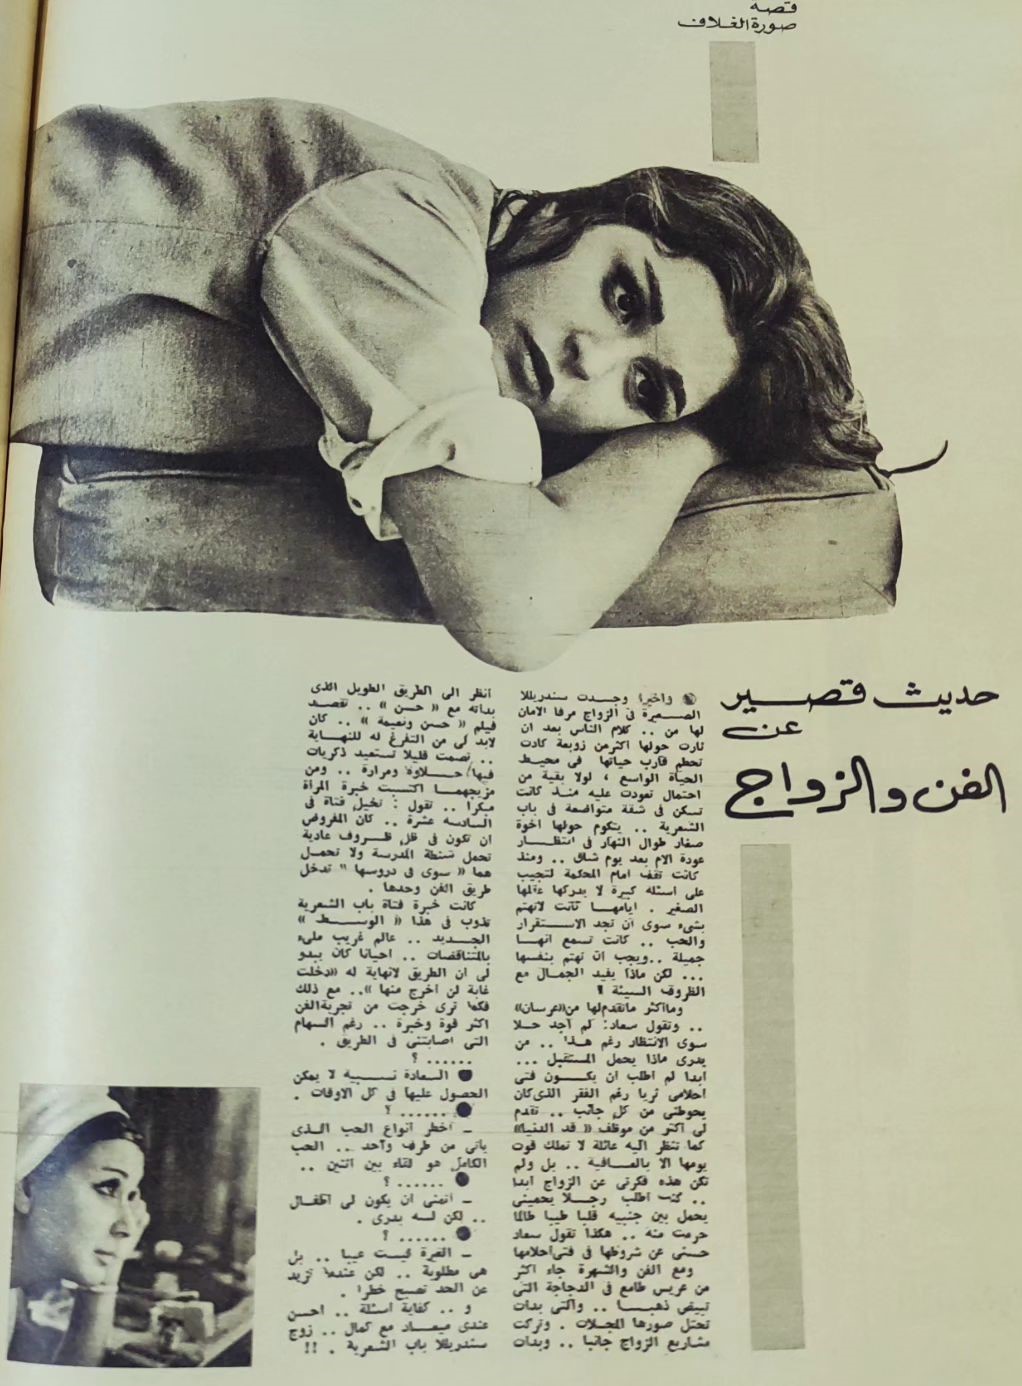 حوار صحفي : حديث قصير عن .. الفن والزواج 1967 م Ycoo_a10